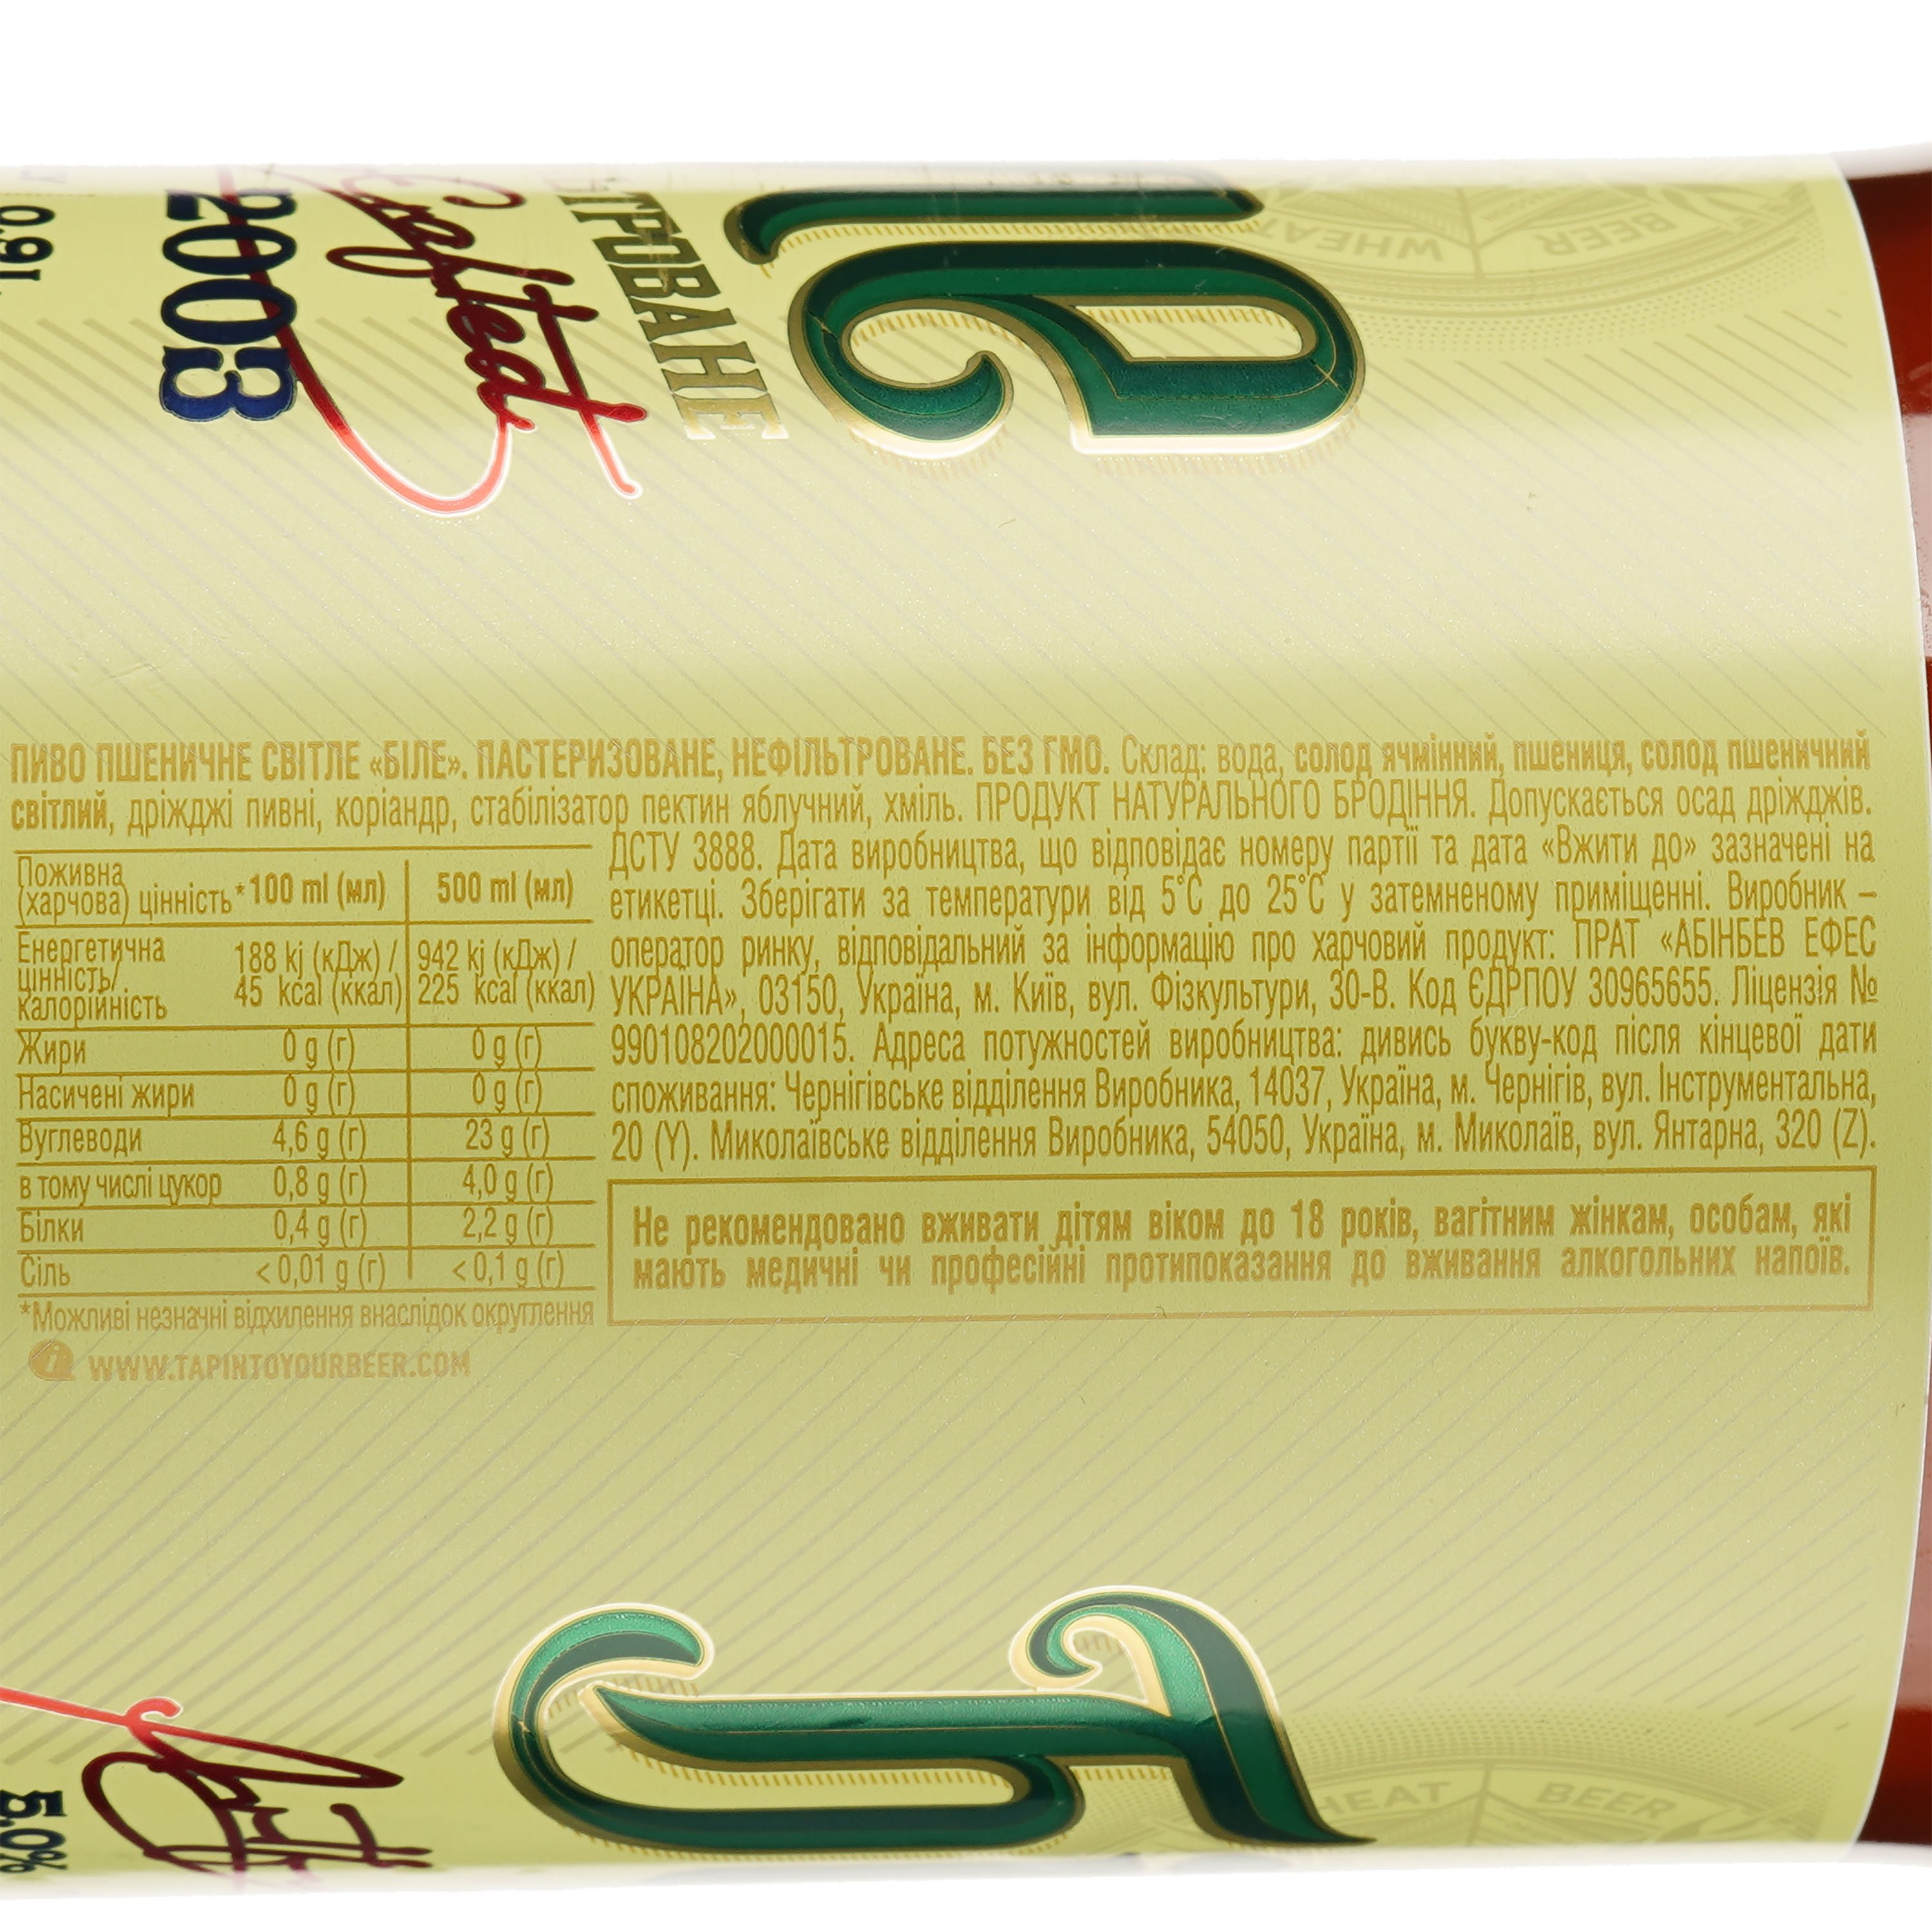 Пиво Чернігівське Белое, светлое, нефильтрованное, 5%, 0,9 л - фото 3